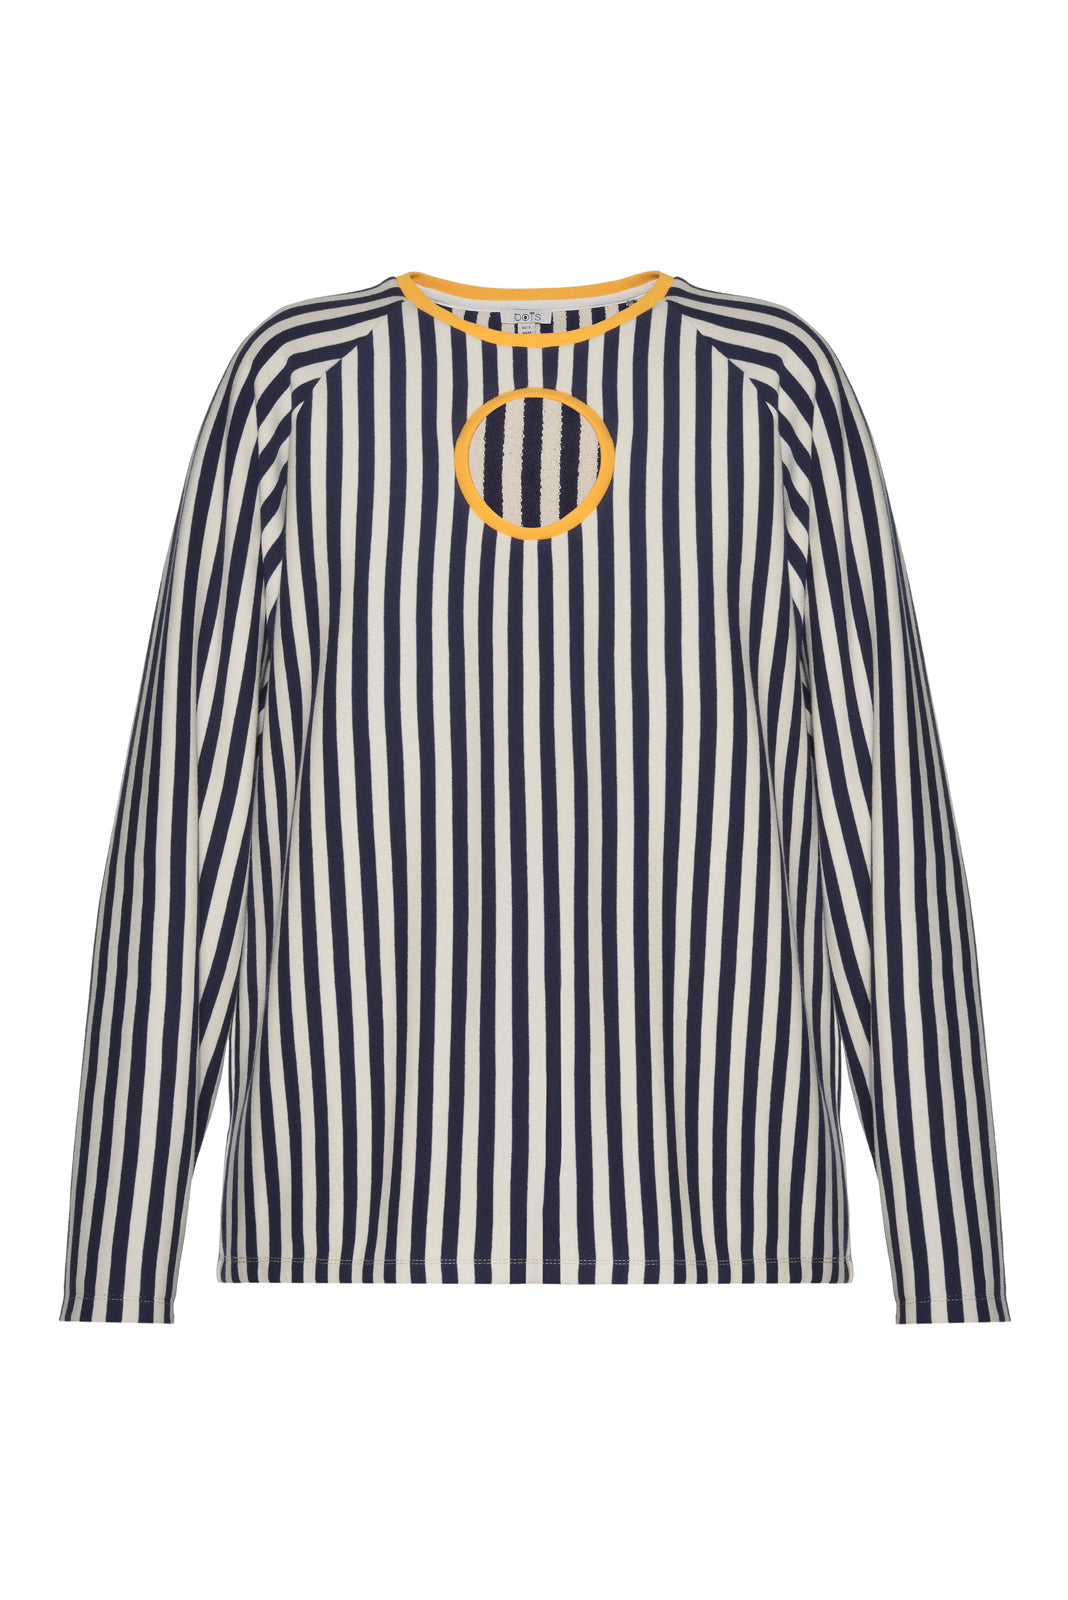 Cut Outs Striped Sweatshirt